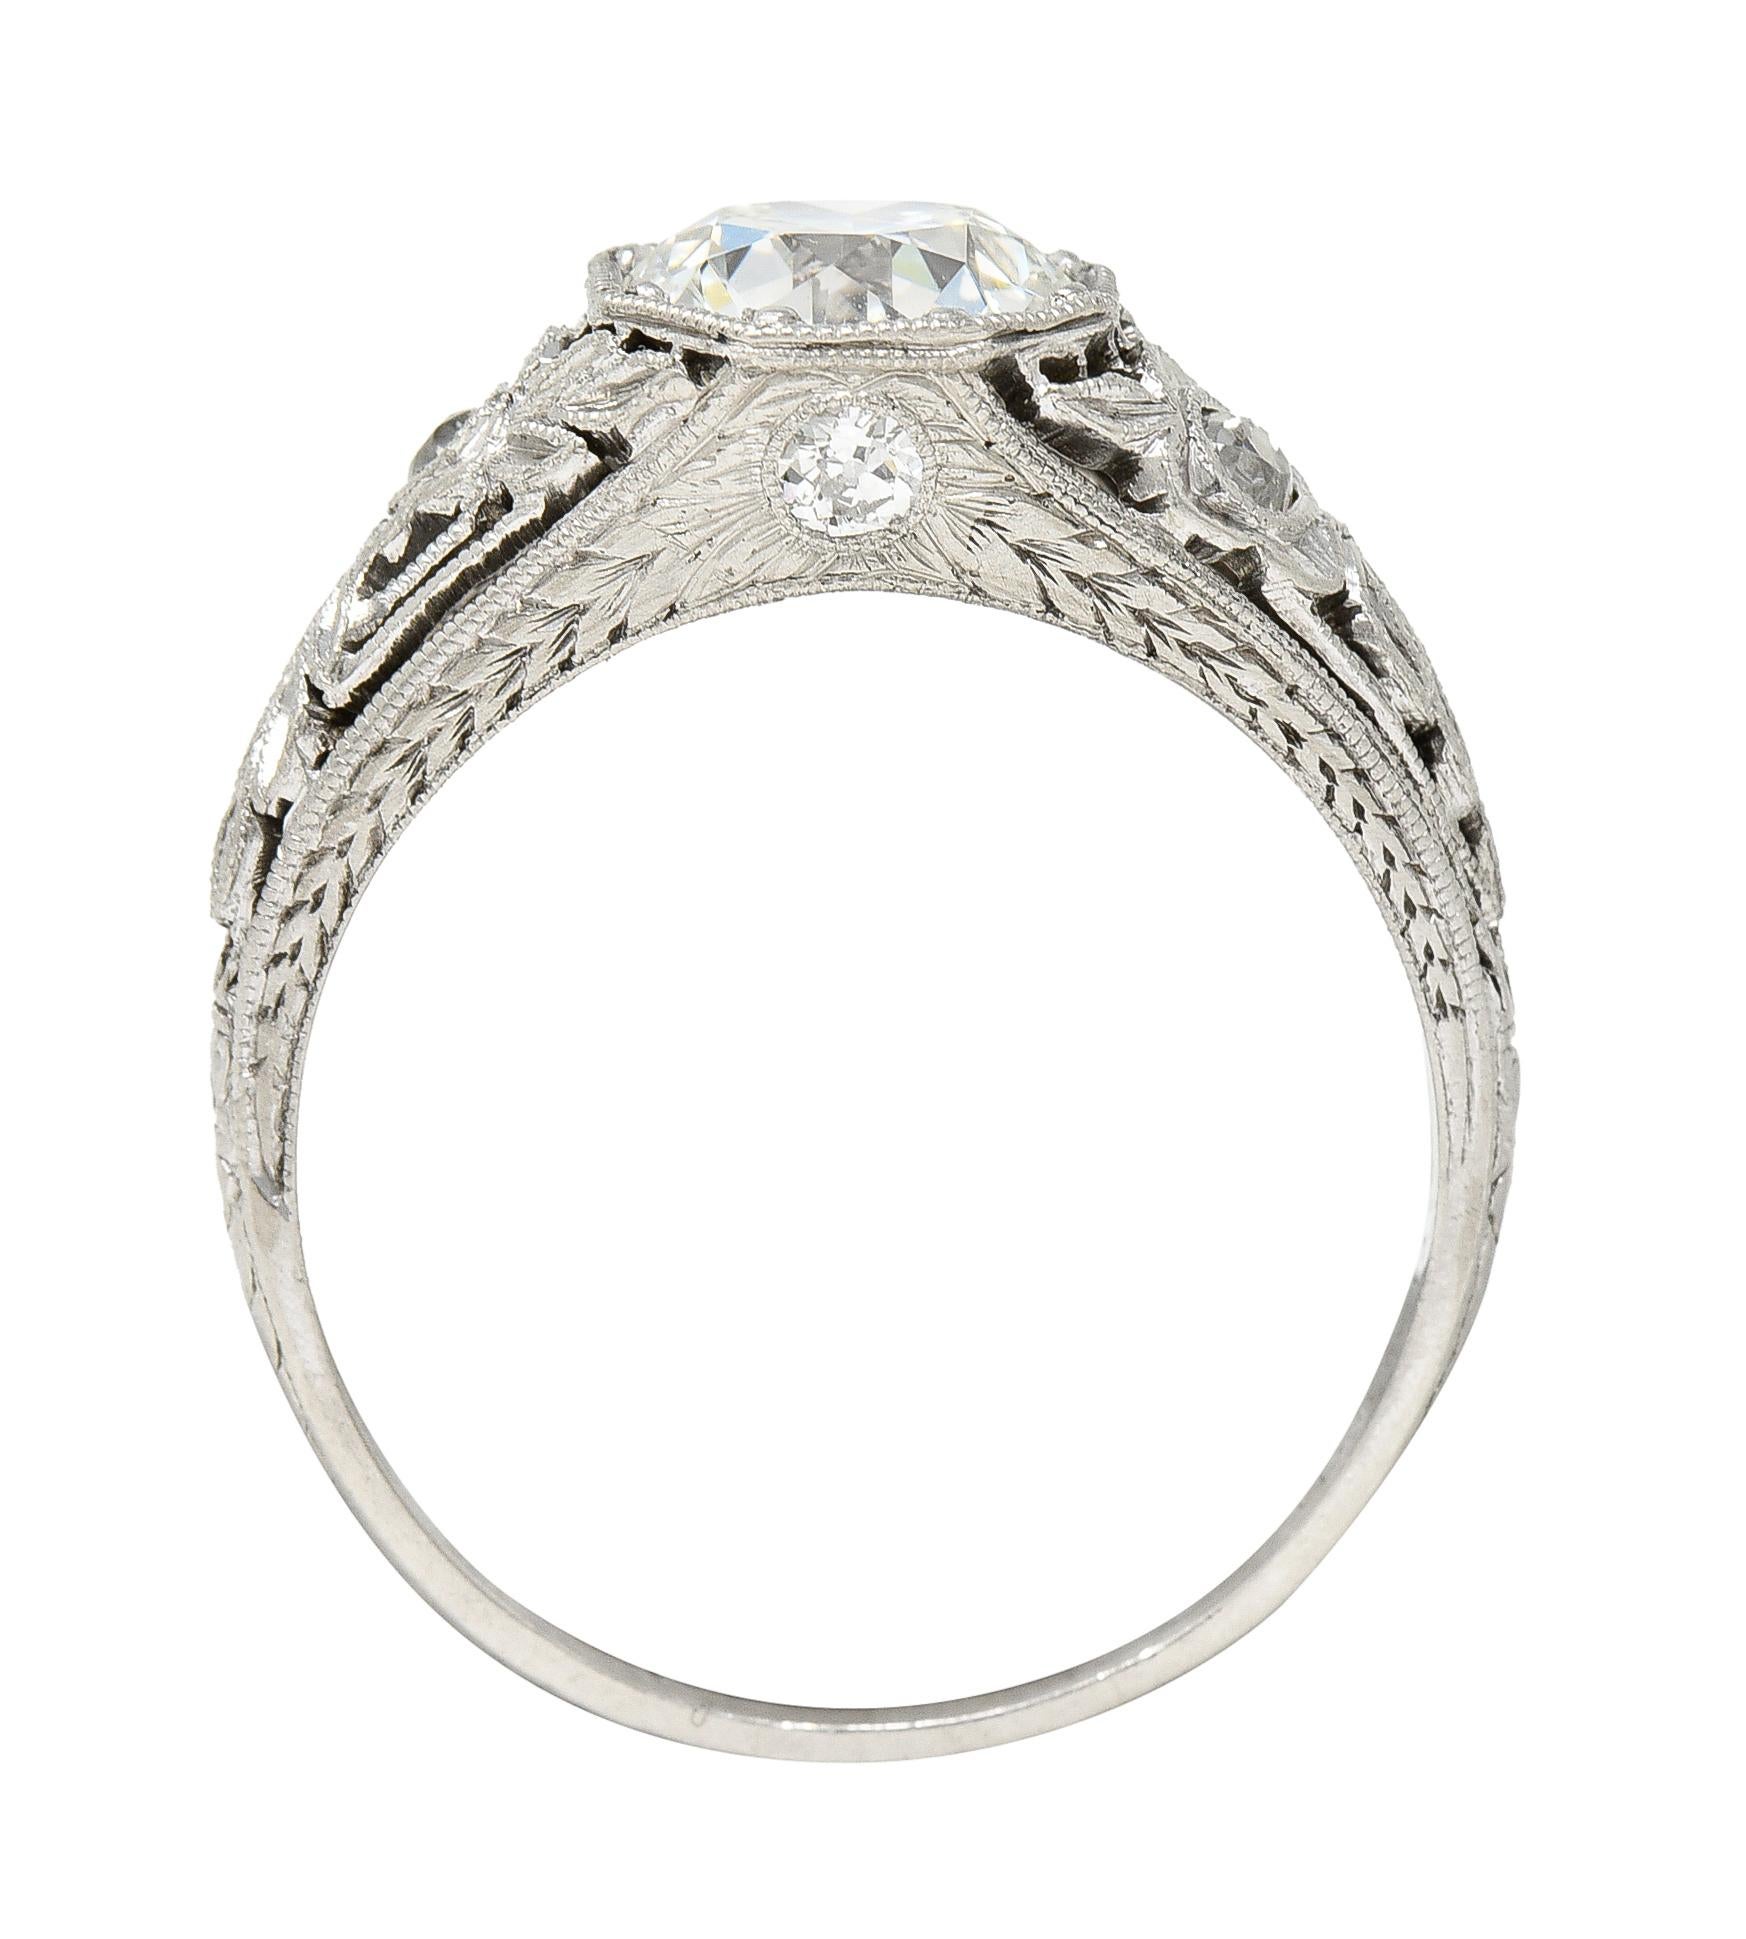 Antique 1.75 Carats Diamond Platinum Floral Laurel Engagement Ring For Sale 1